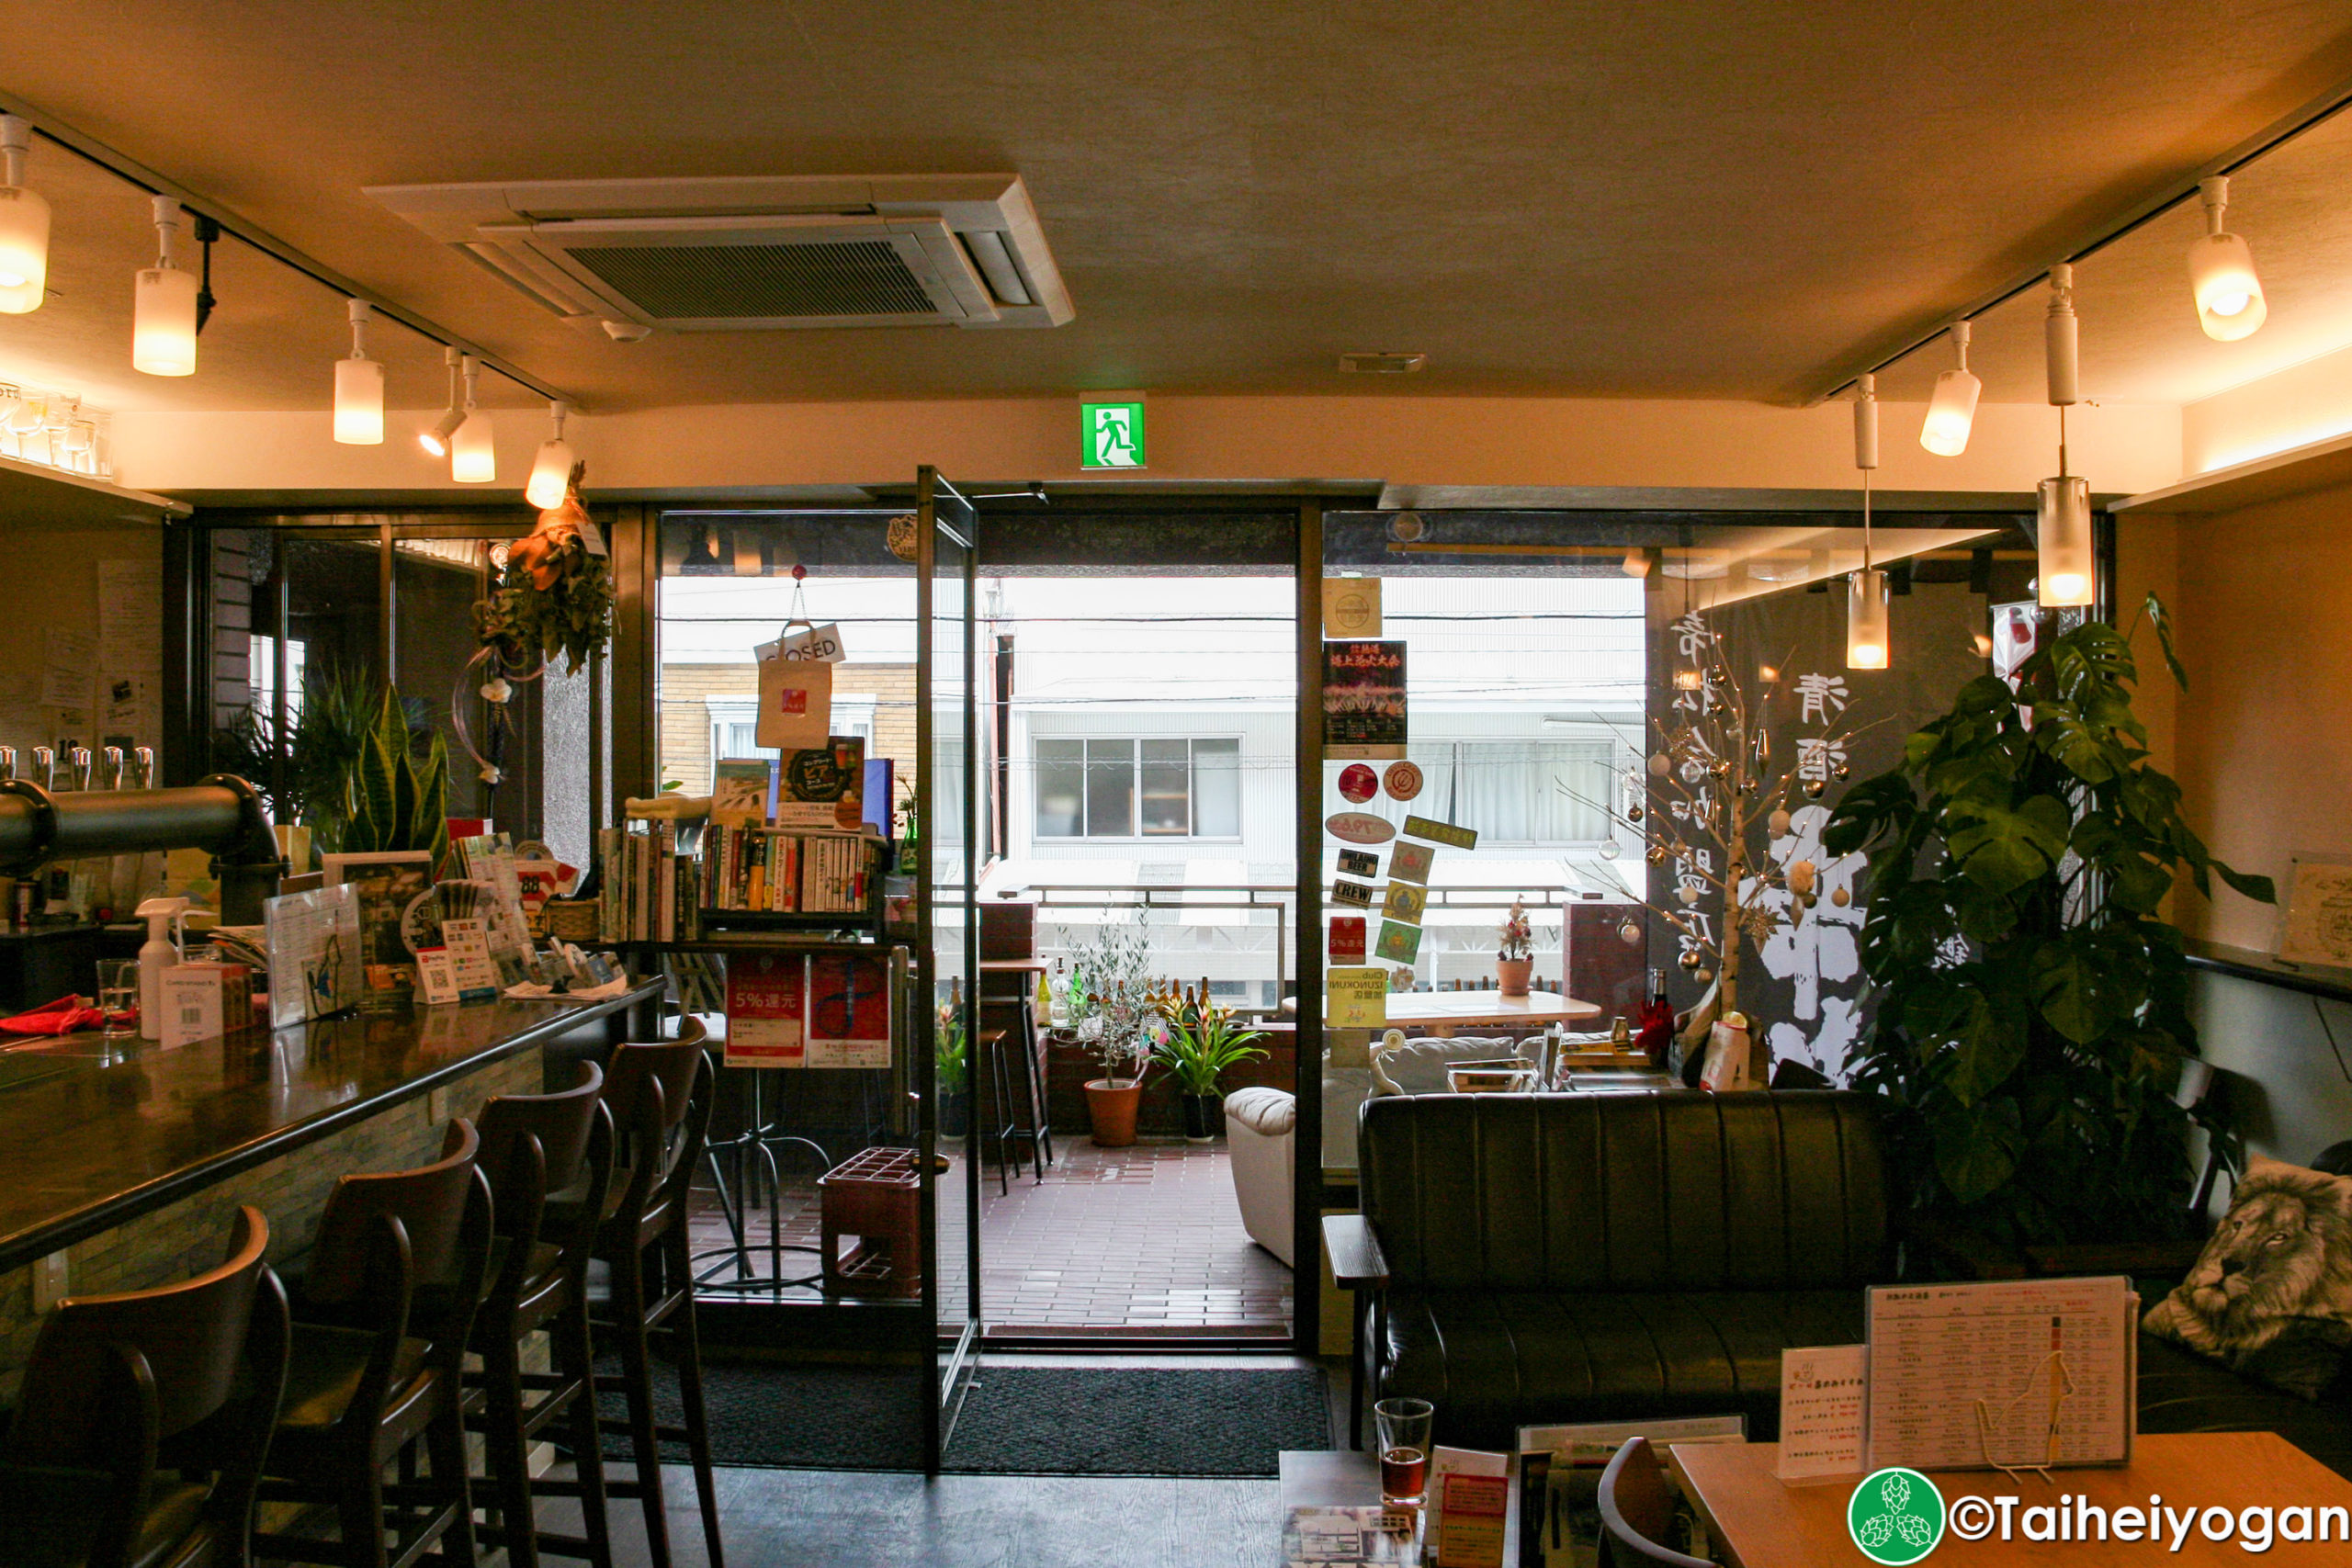 Craft Beer Café 熱海の麥酒屋・Craft Beer Café Atami Mugishuya - Interior - Exit